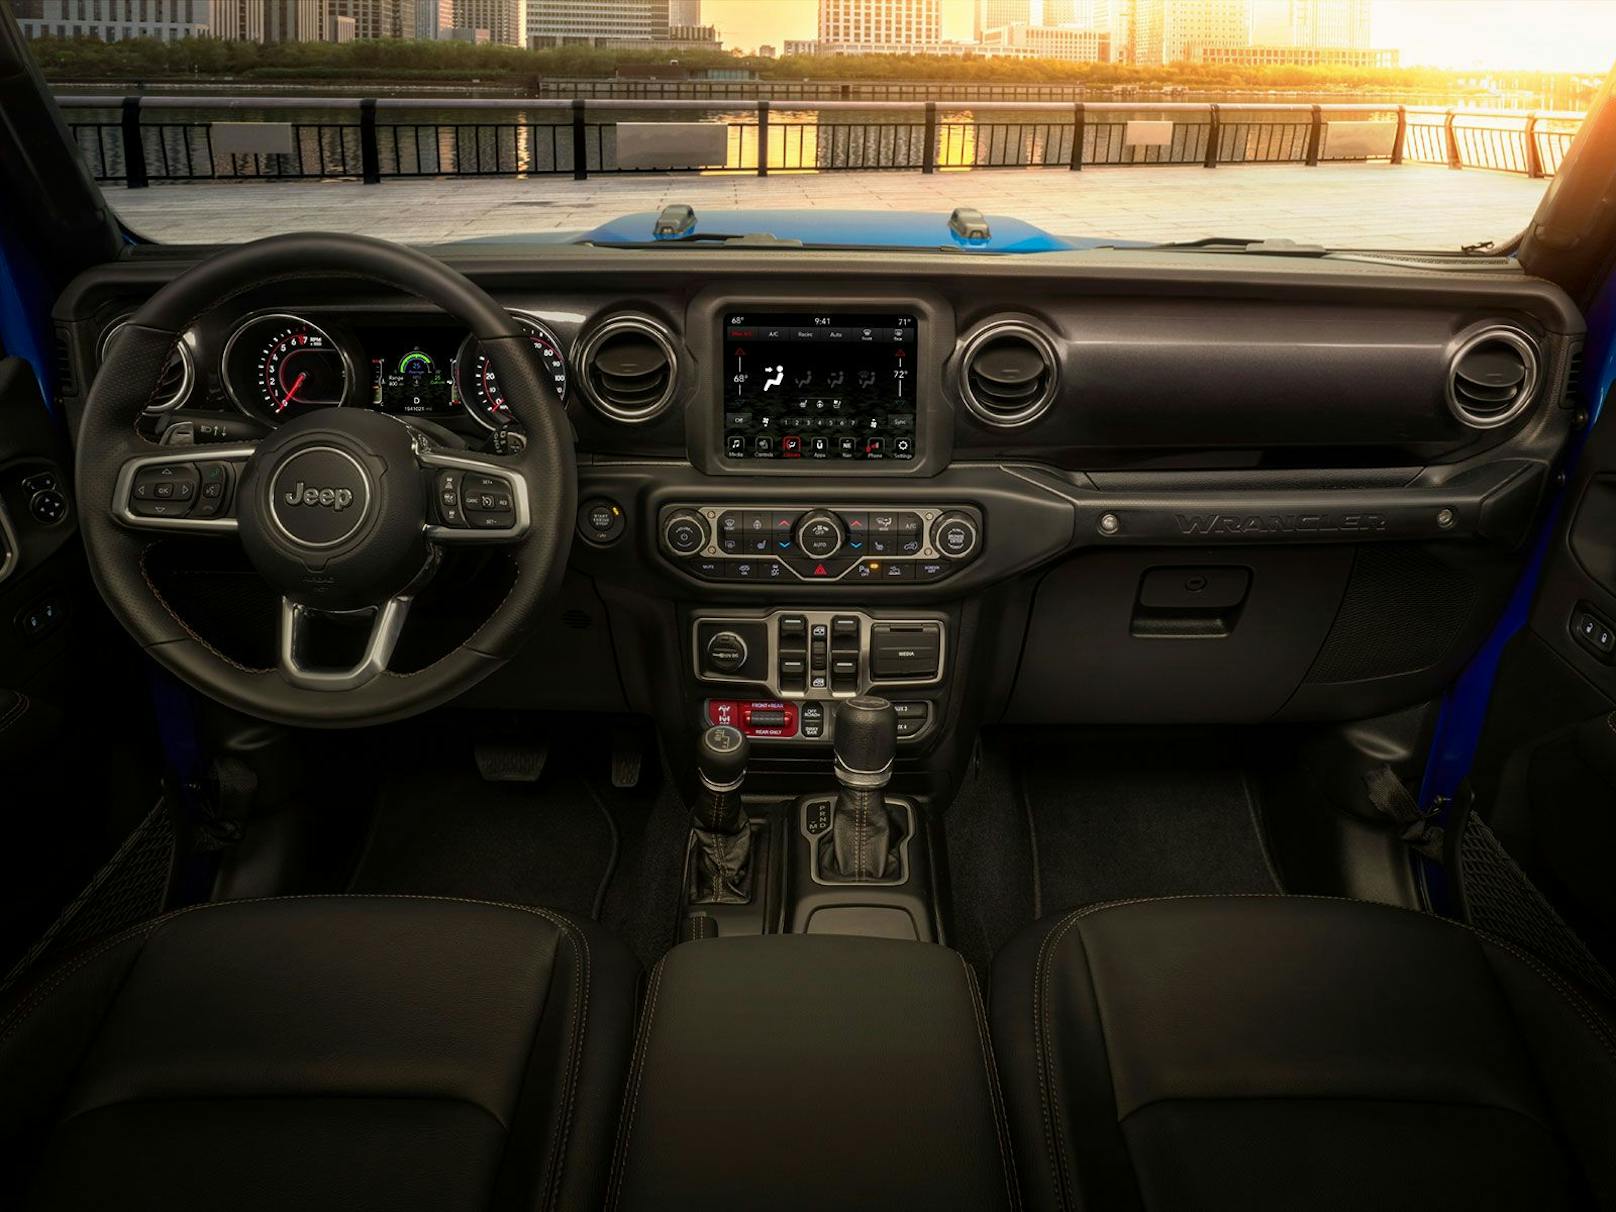 Modernen Cockpit im Klassiker von Jeep